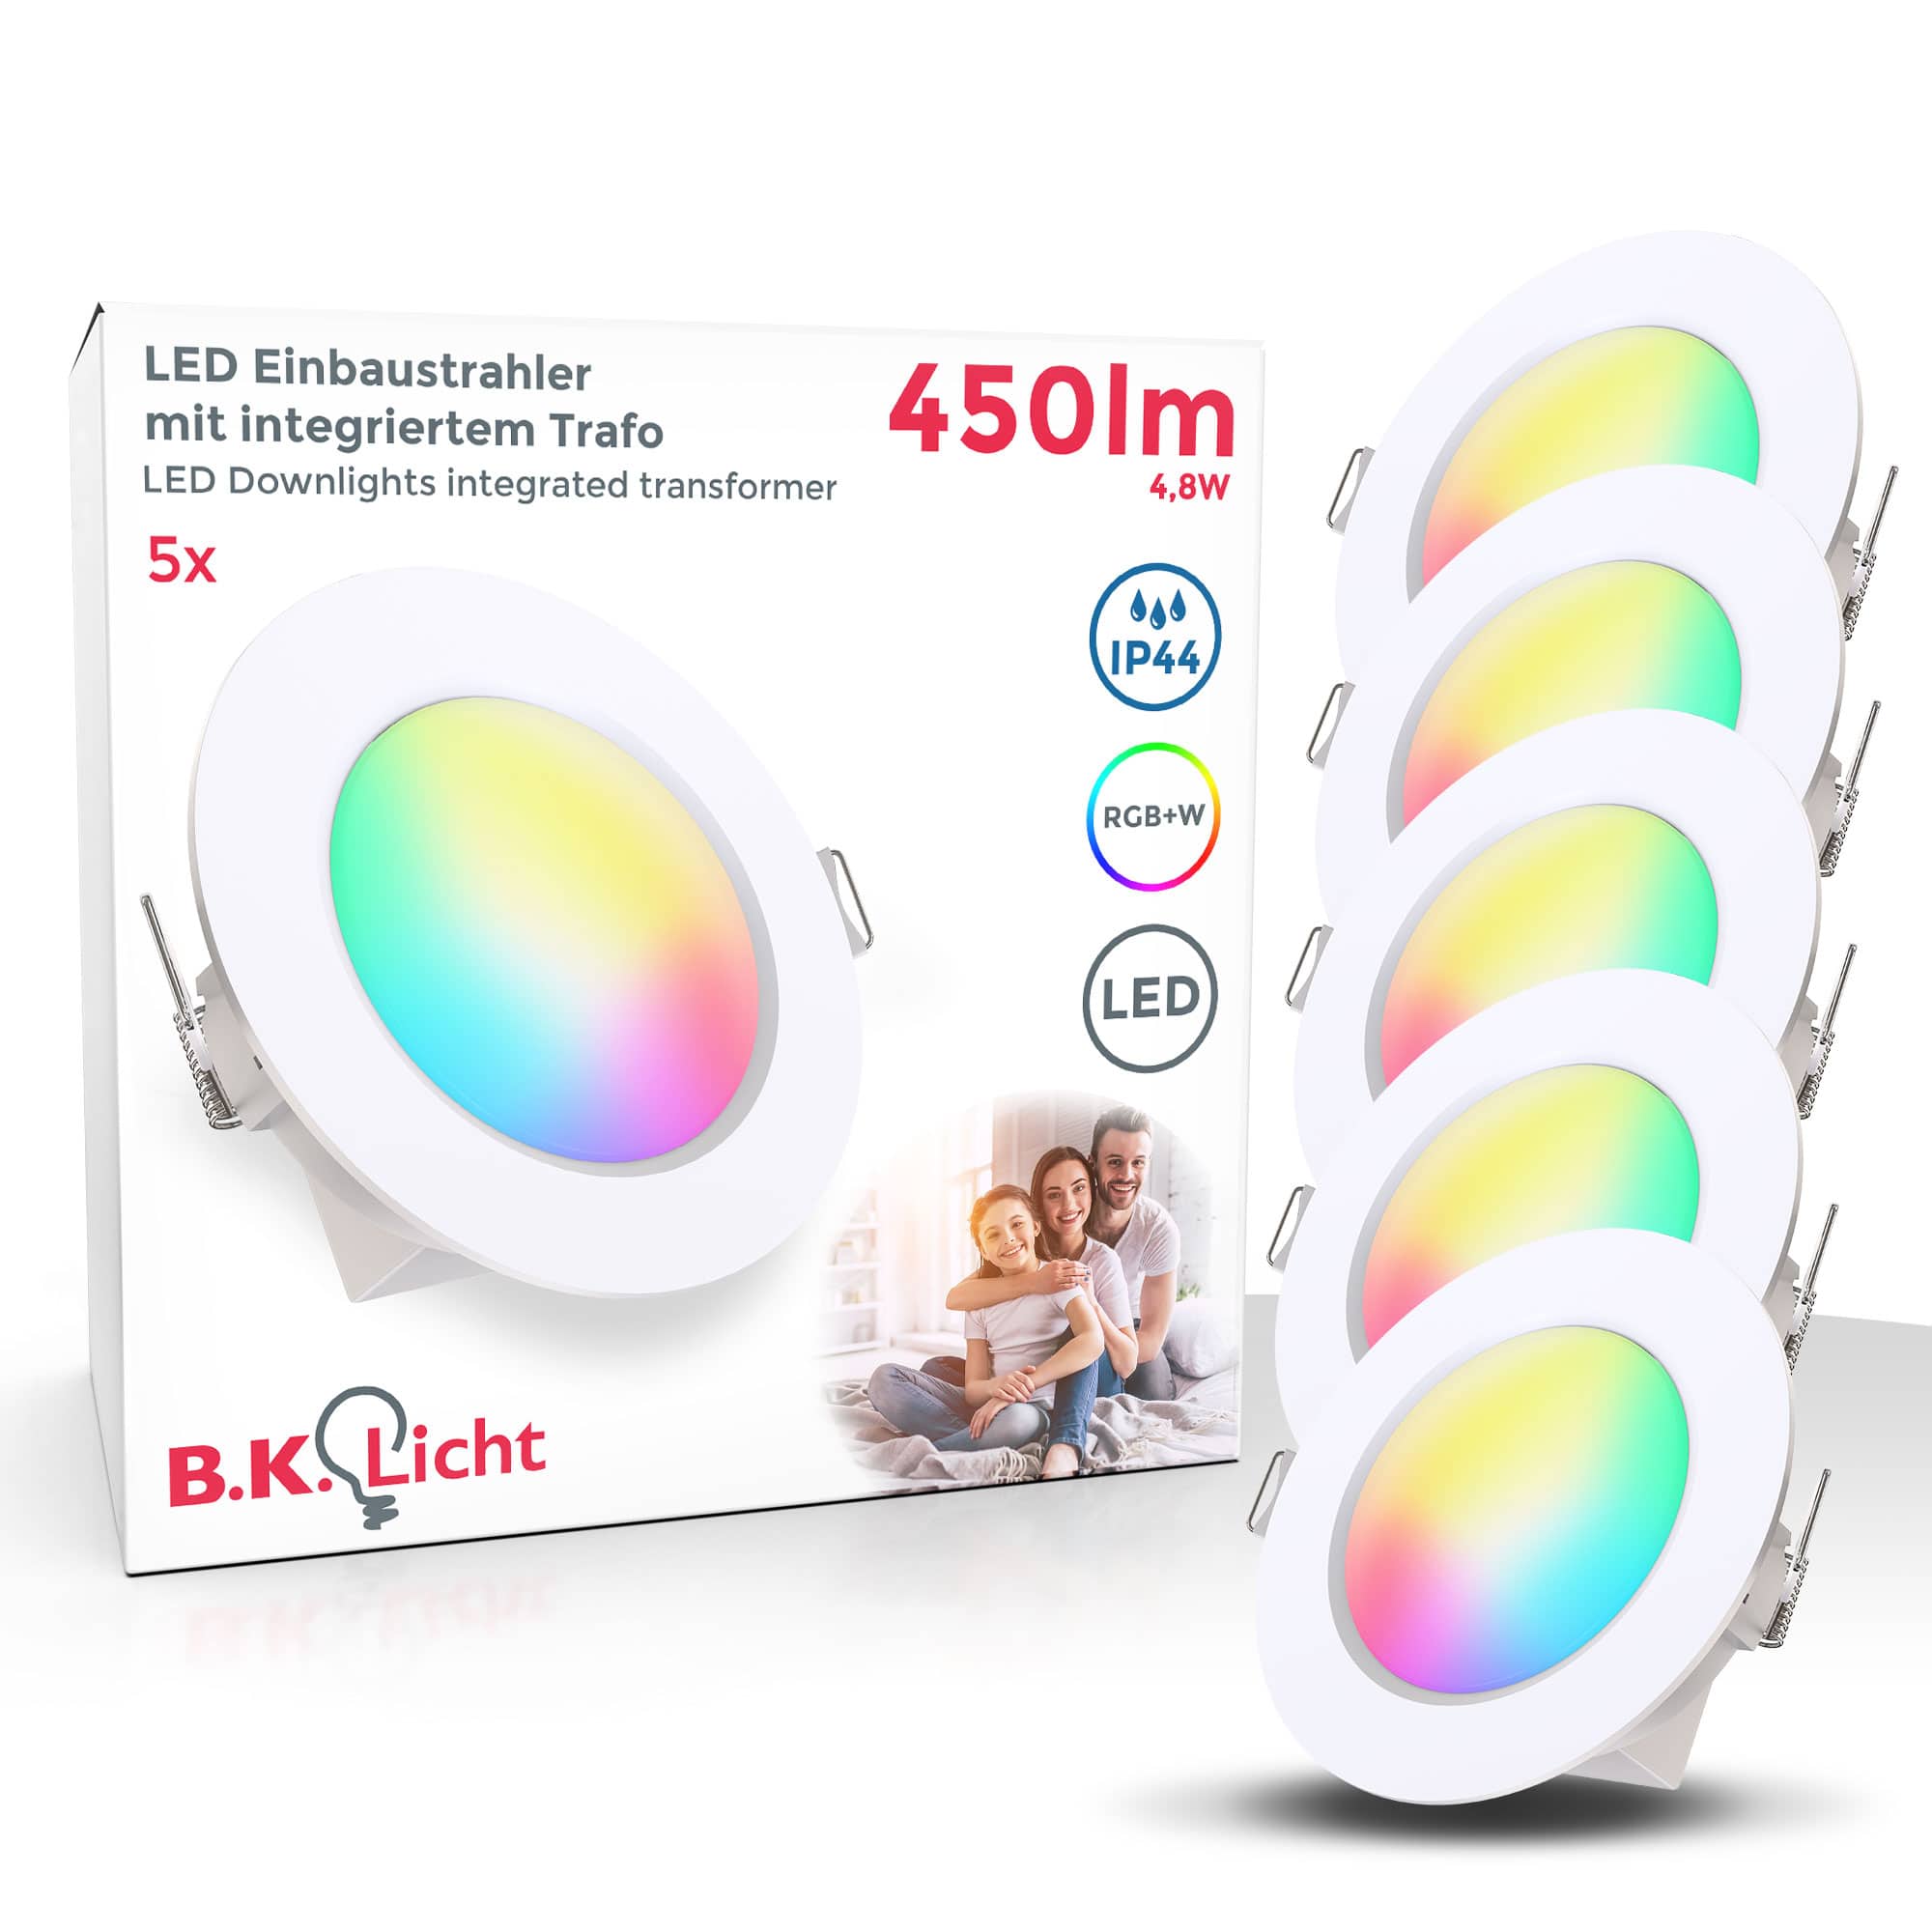 B.K.Licht Onlineshop günstig Lampen kaufen Leuchten | LED 